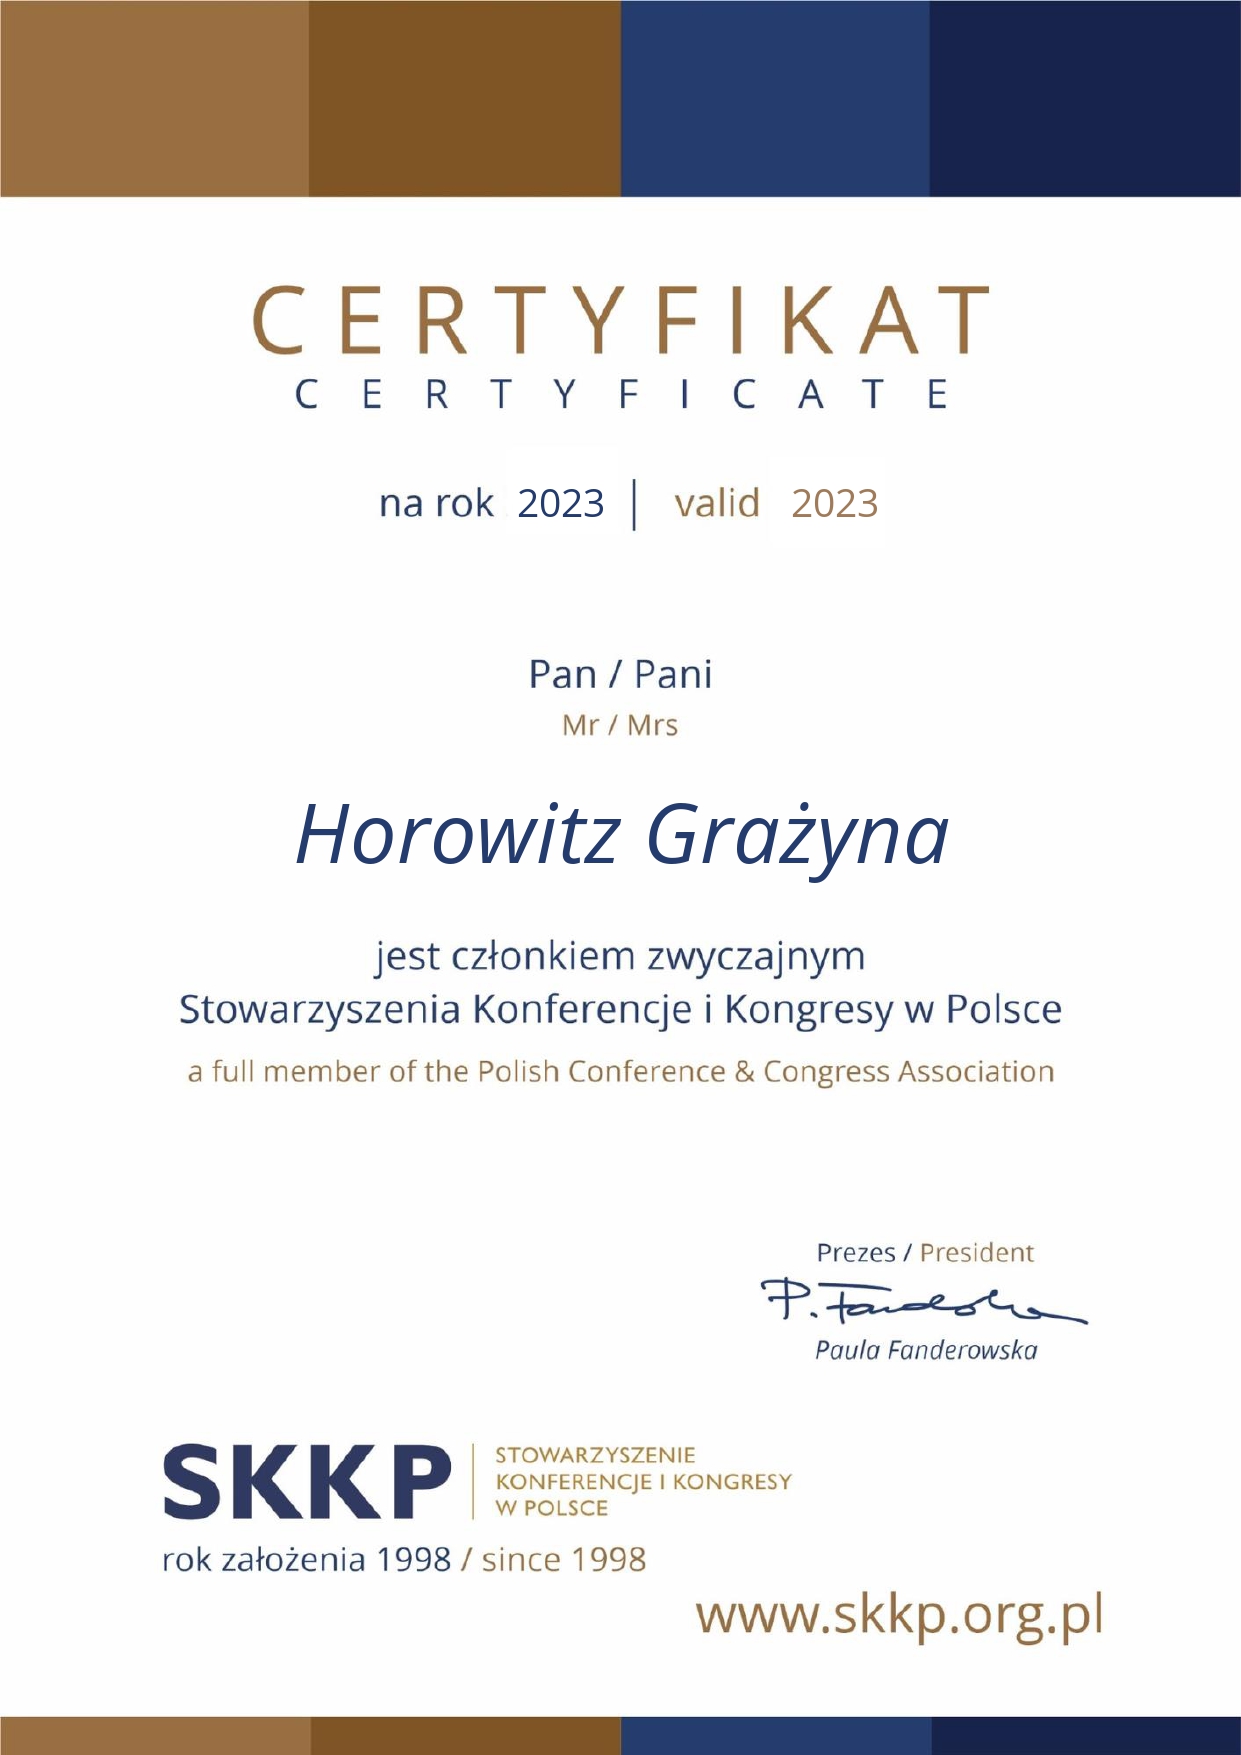 Certyfikat-SKKP-czlonek-zwyczajny_Horowitz Grażyna.jpg